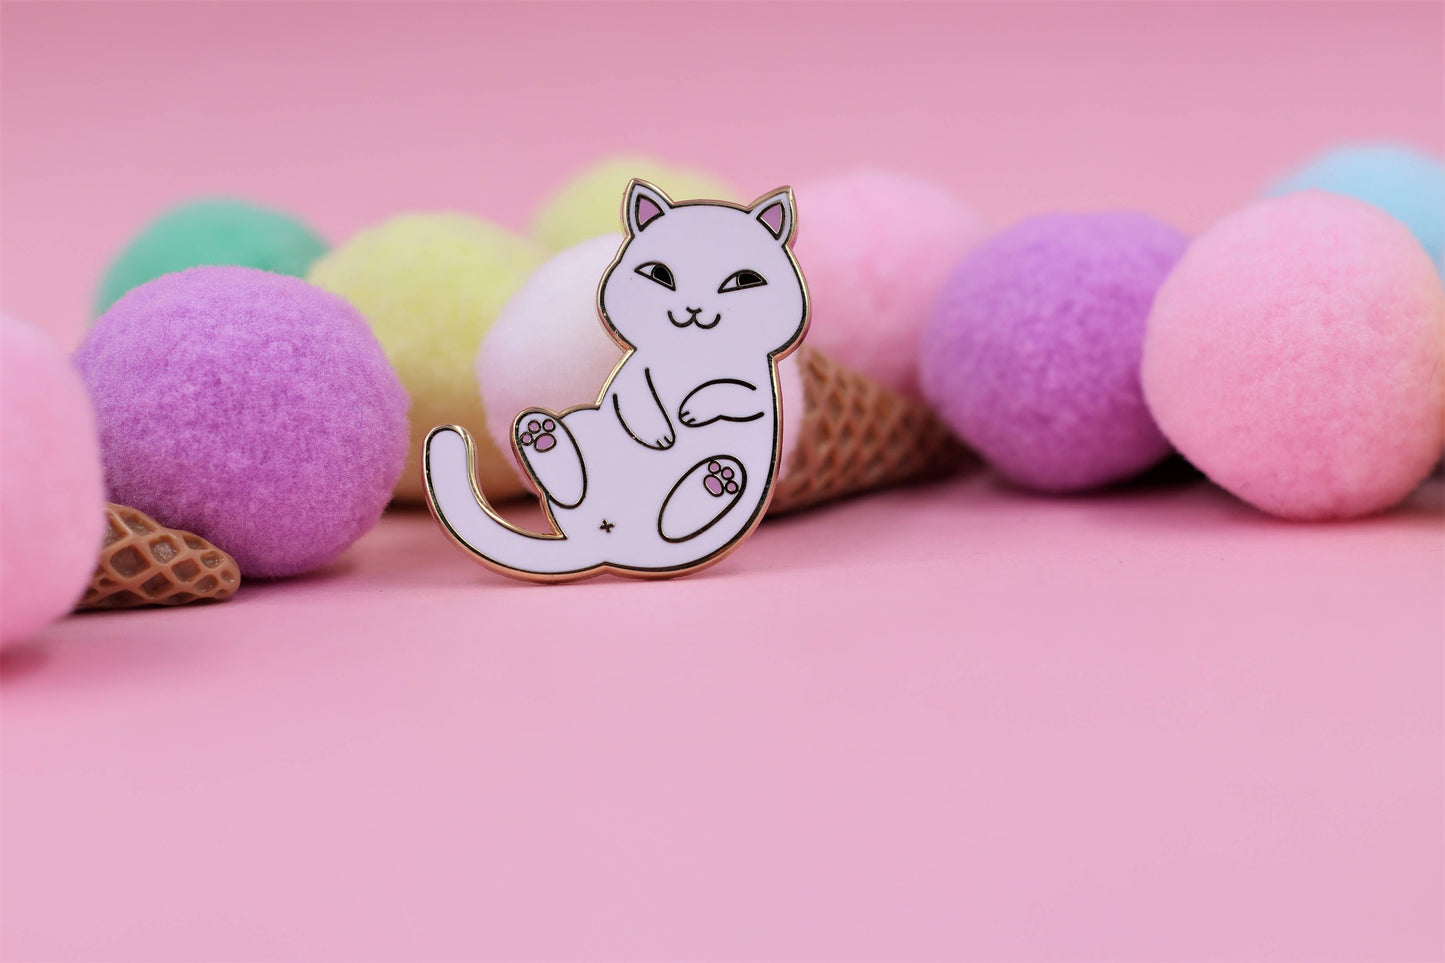 Playful Cat Enamel Pin - Cute & Funny Cat Lapel Pin